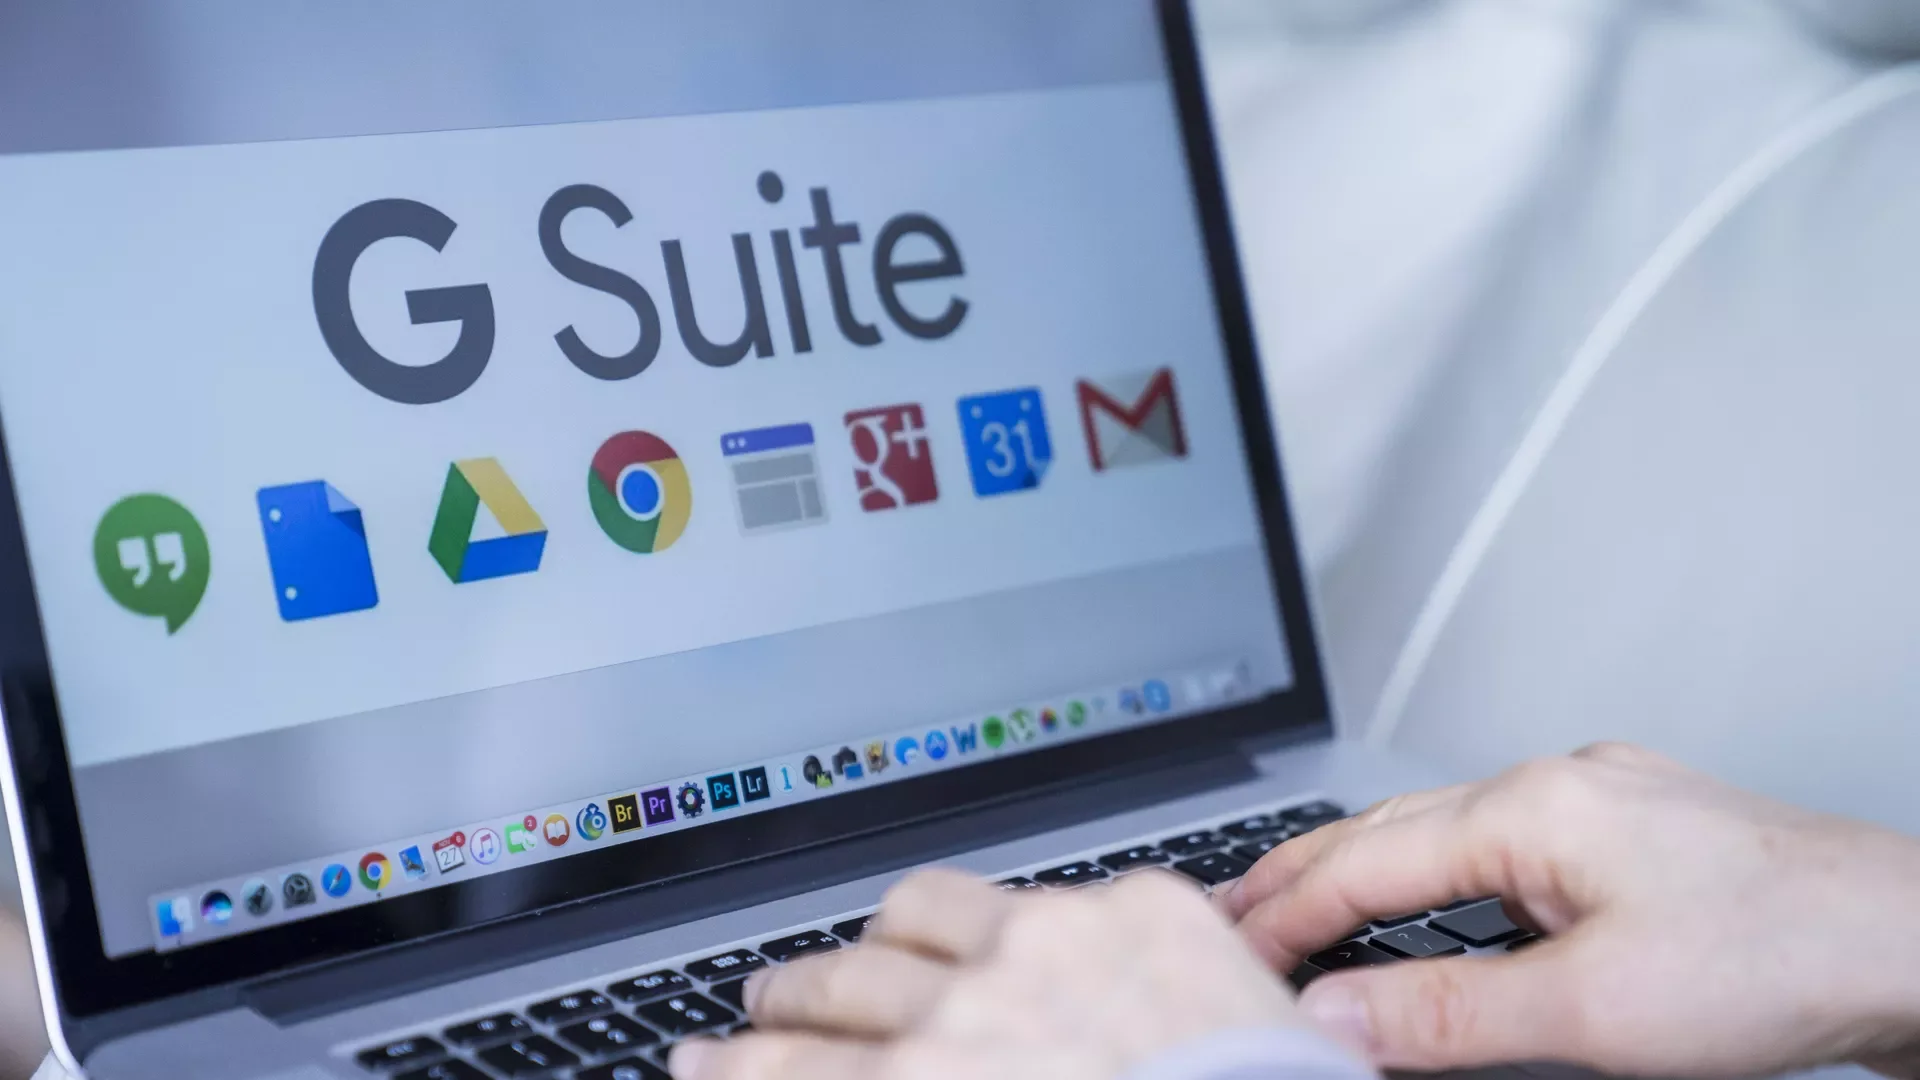 Οι καλύτερες εναλλακτικές λύσεις για το G Suite (Workspace) της Google